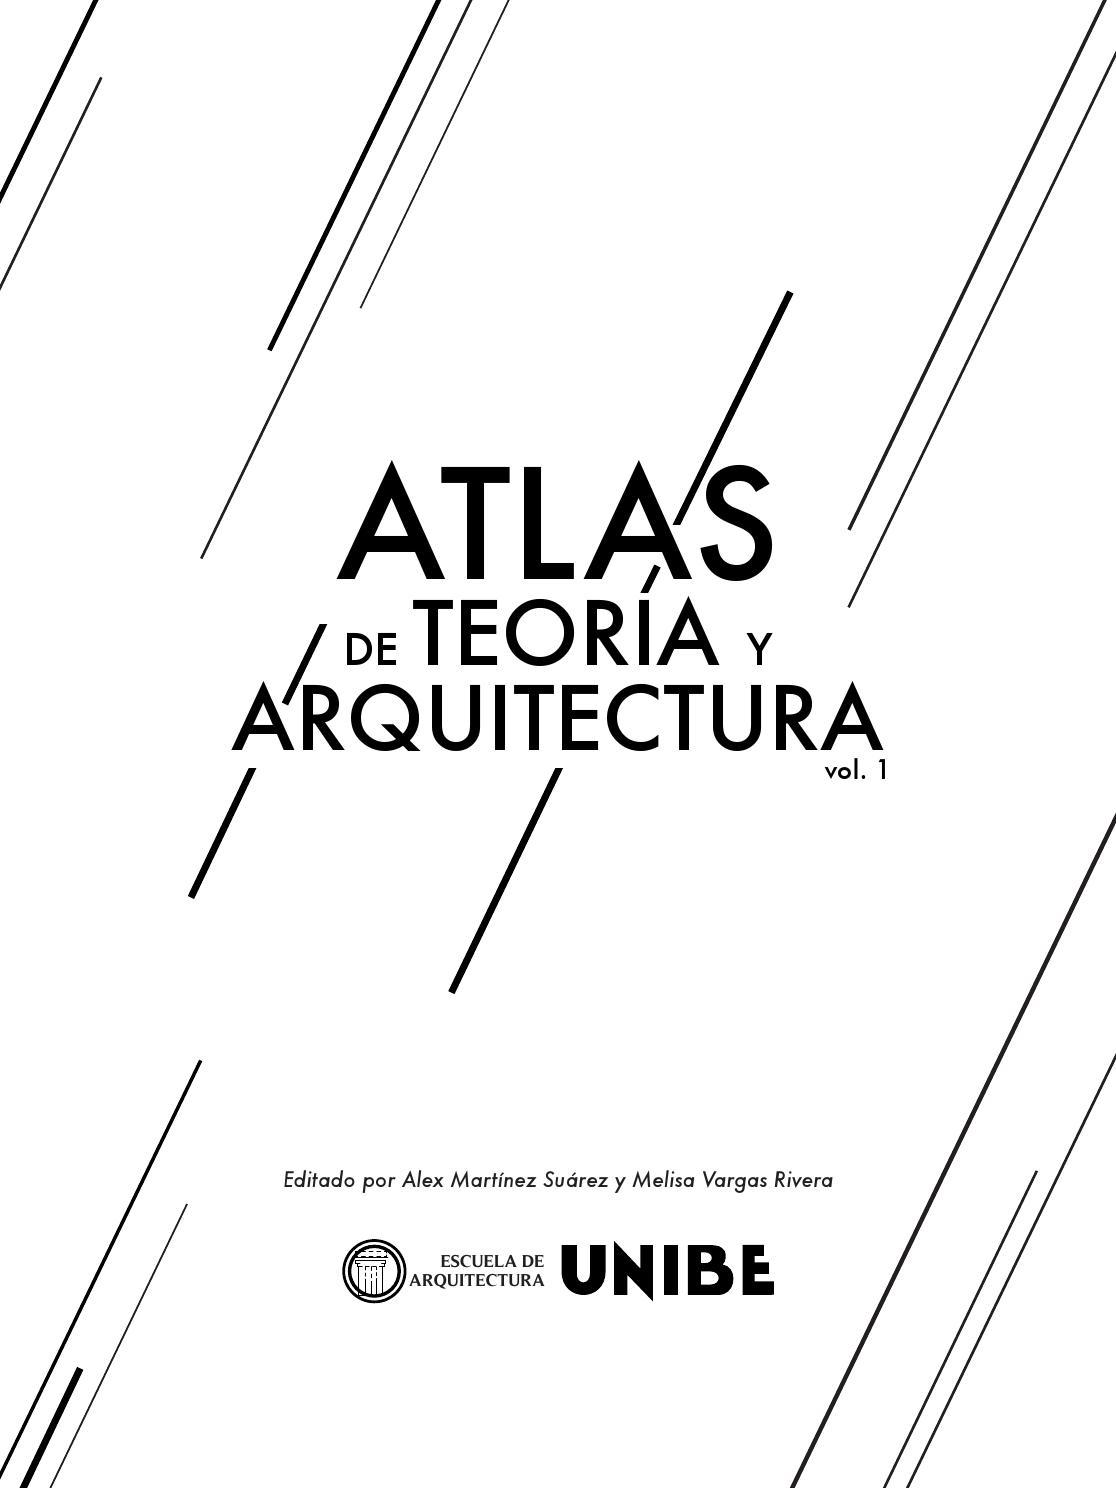 Atlas de Teoría y Arquitectura Vol. 1 1 Edición Universidad Iberoamericana (UNIBE) PDF